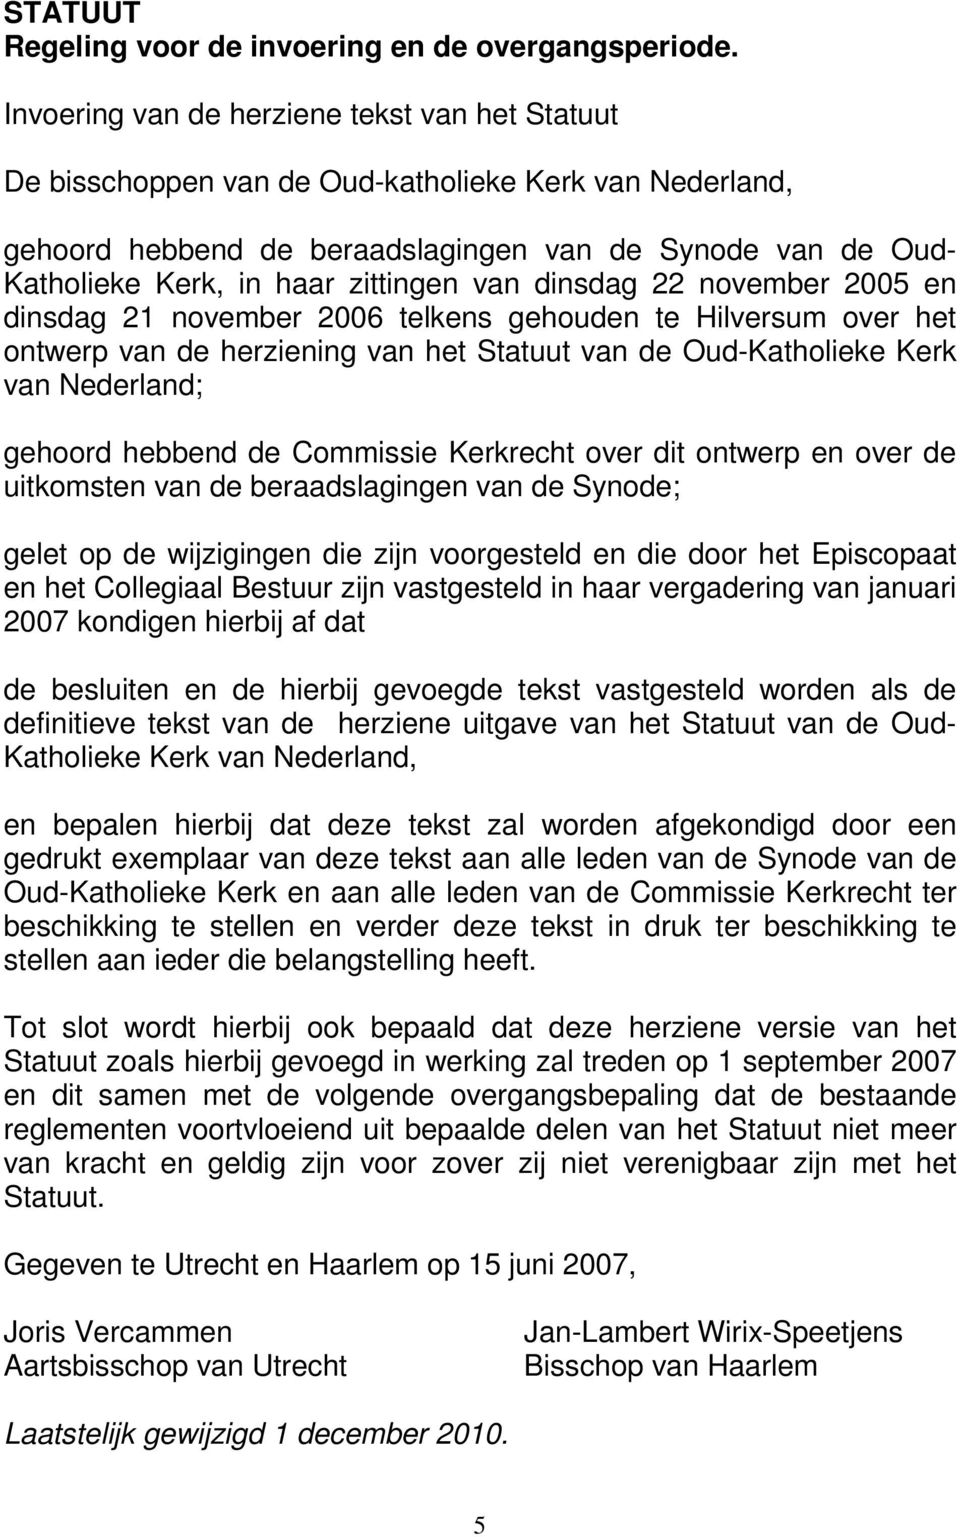 zittingen van dinsdag 22 november 2005 en dinsdag 21 november 2006 telkens gehouden te Hilversum over het ontwerp van de herziening van het Statuut van de Oud-Katholieke Kerk van Nederland; gehoord